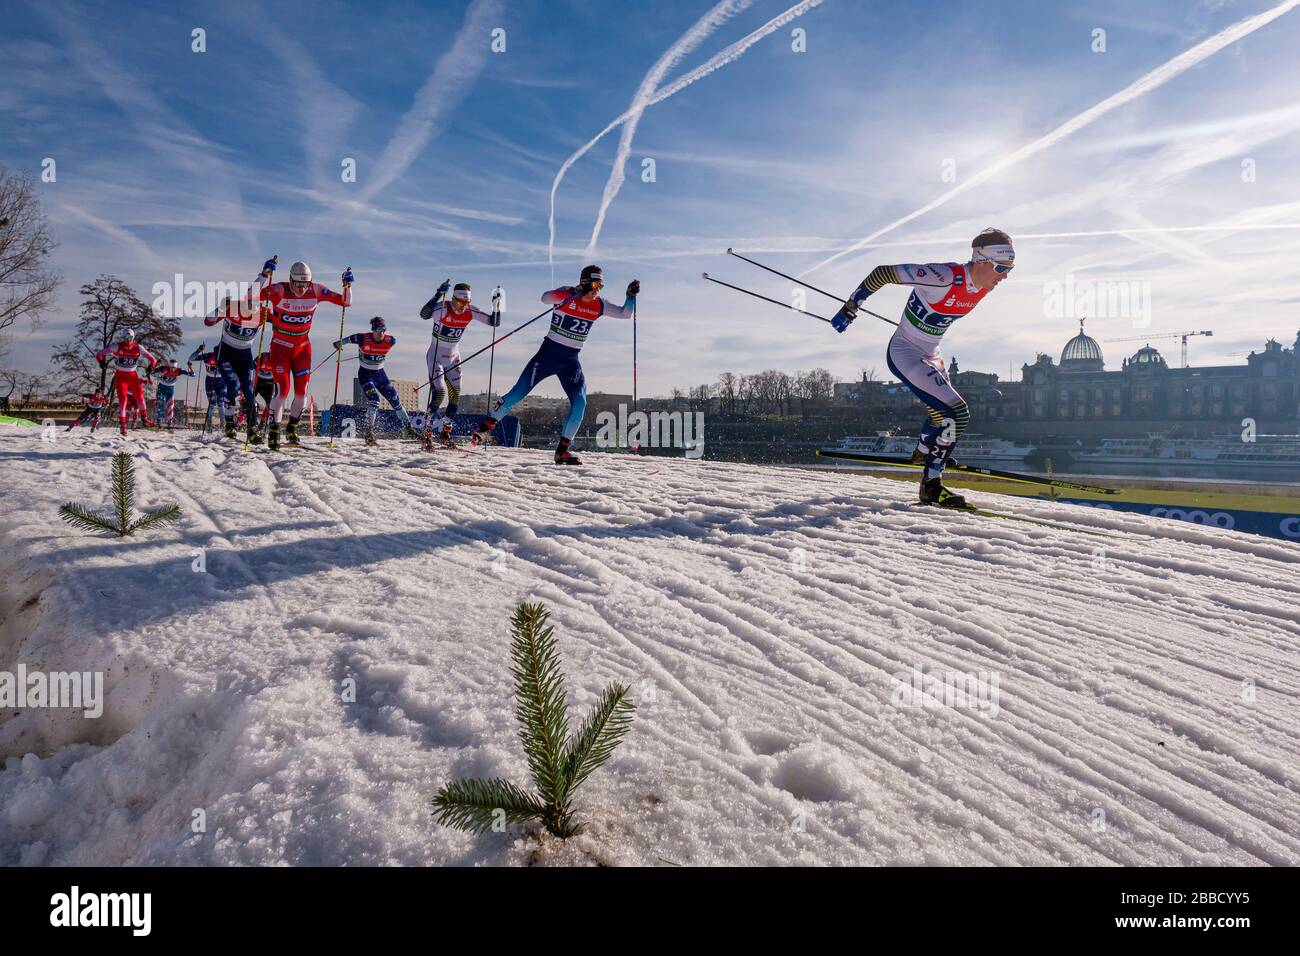 Hombres corriendo en la FIS esquí de fondo sprint World Cup a orillas del río Elba, el horizonte de la ciudad barroca en la distancia Foto de stock